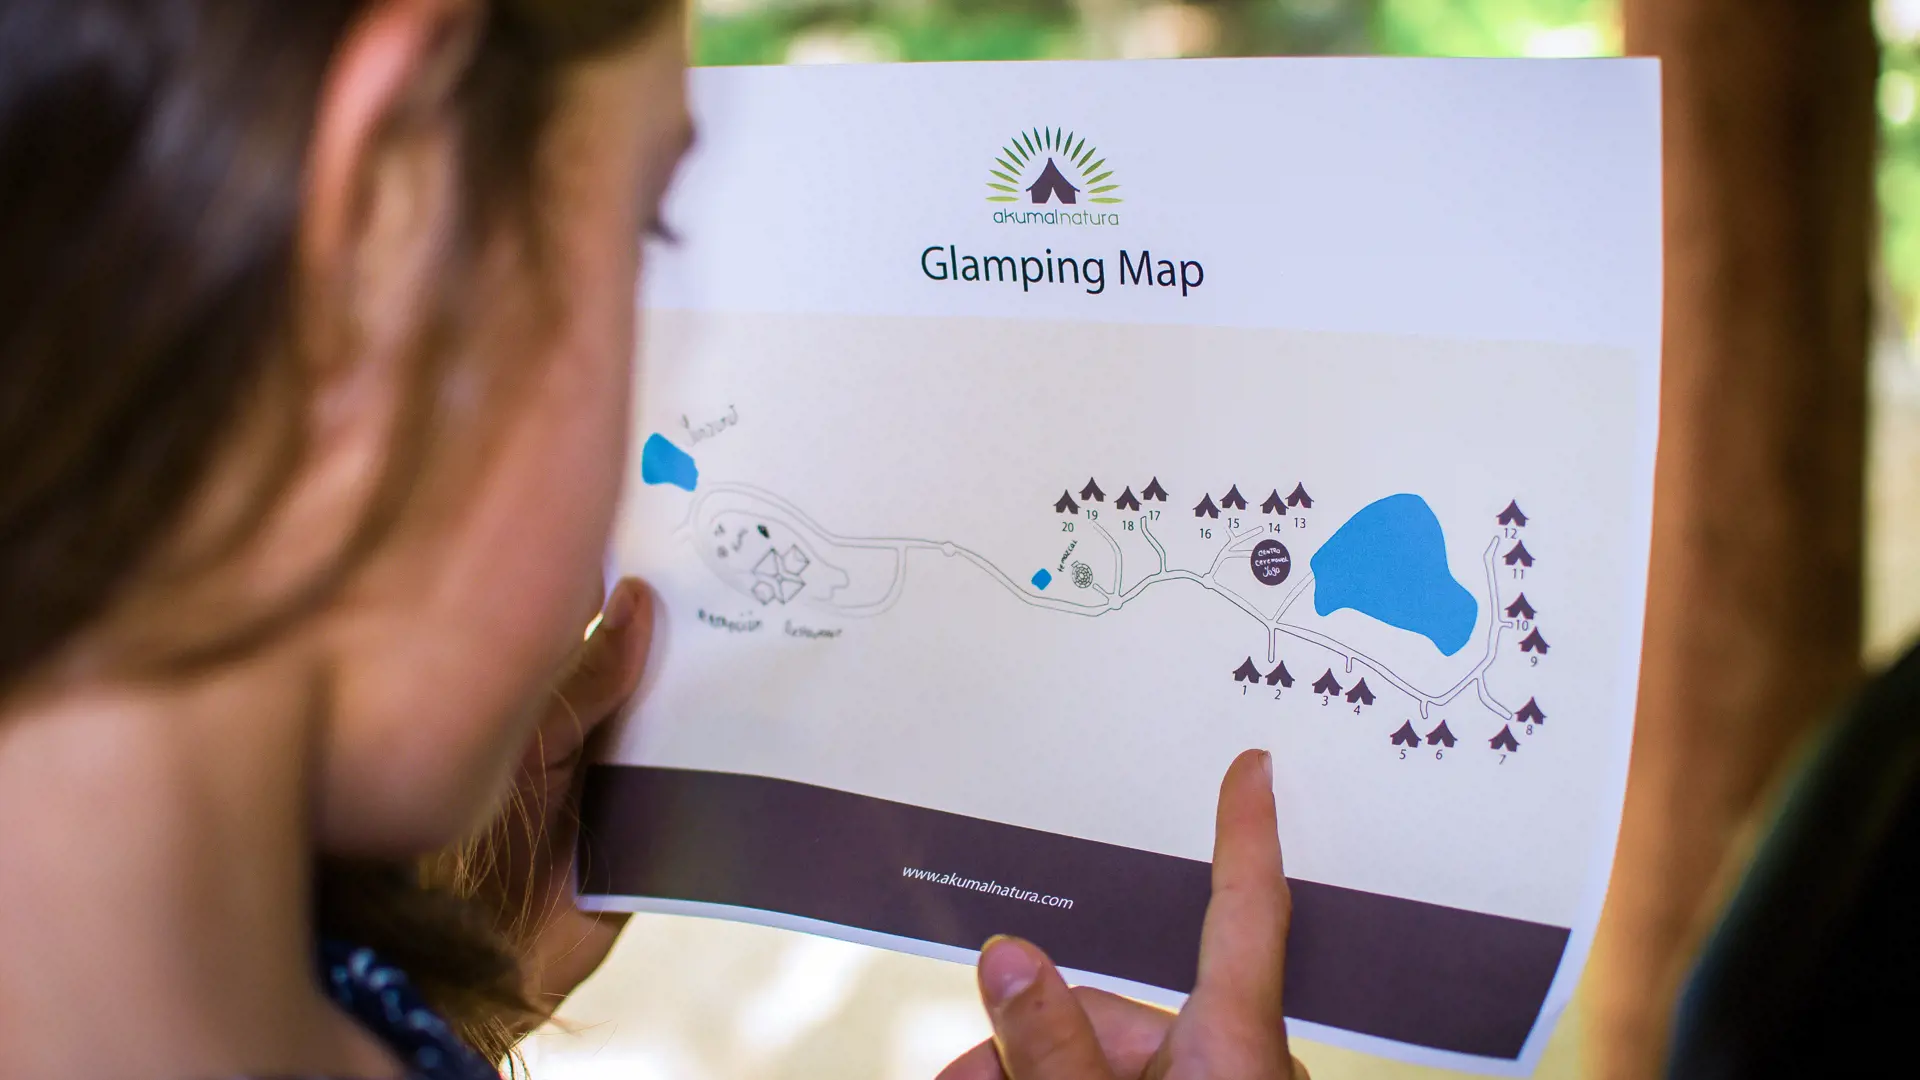 Glamping Map